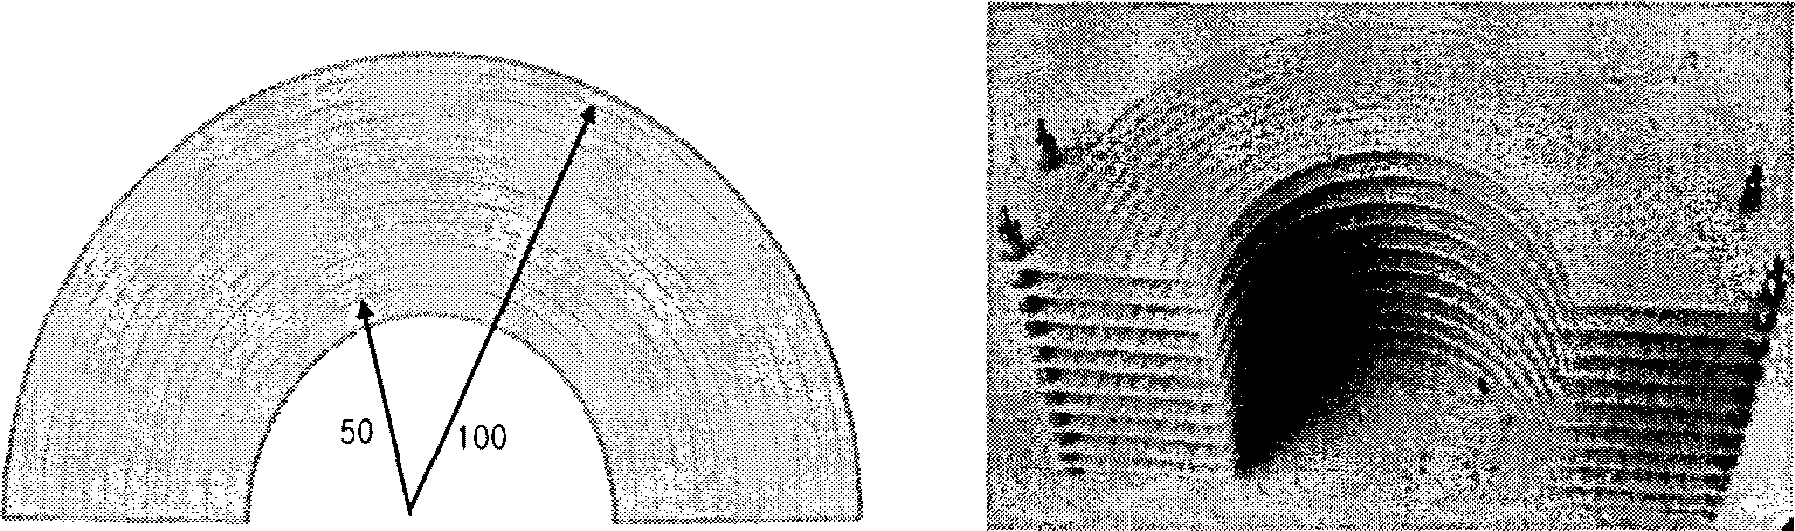 반원형 전파 렌즈 도면(a)과 실물 사진대)